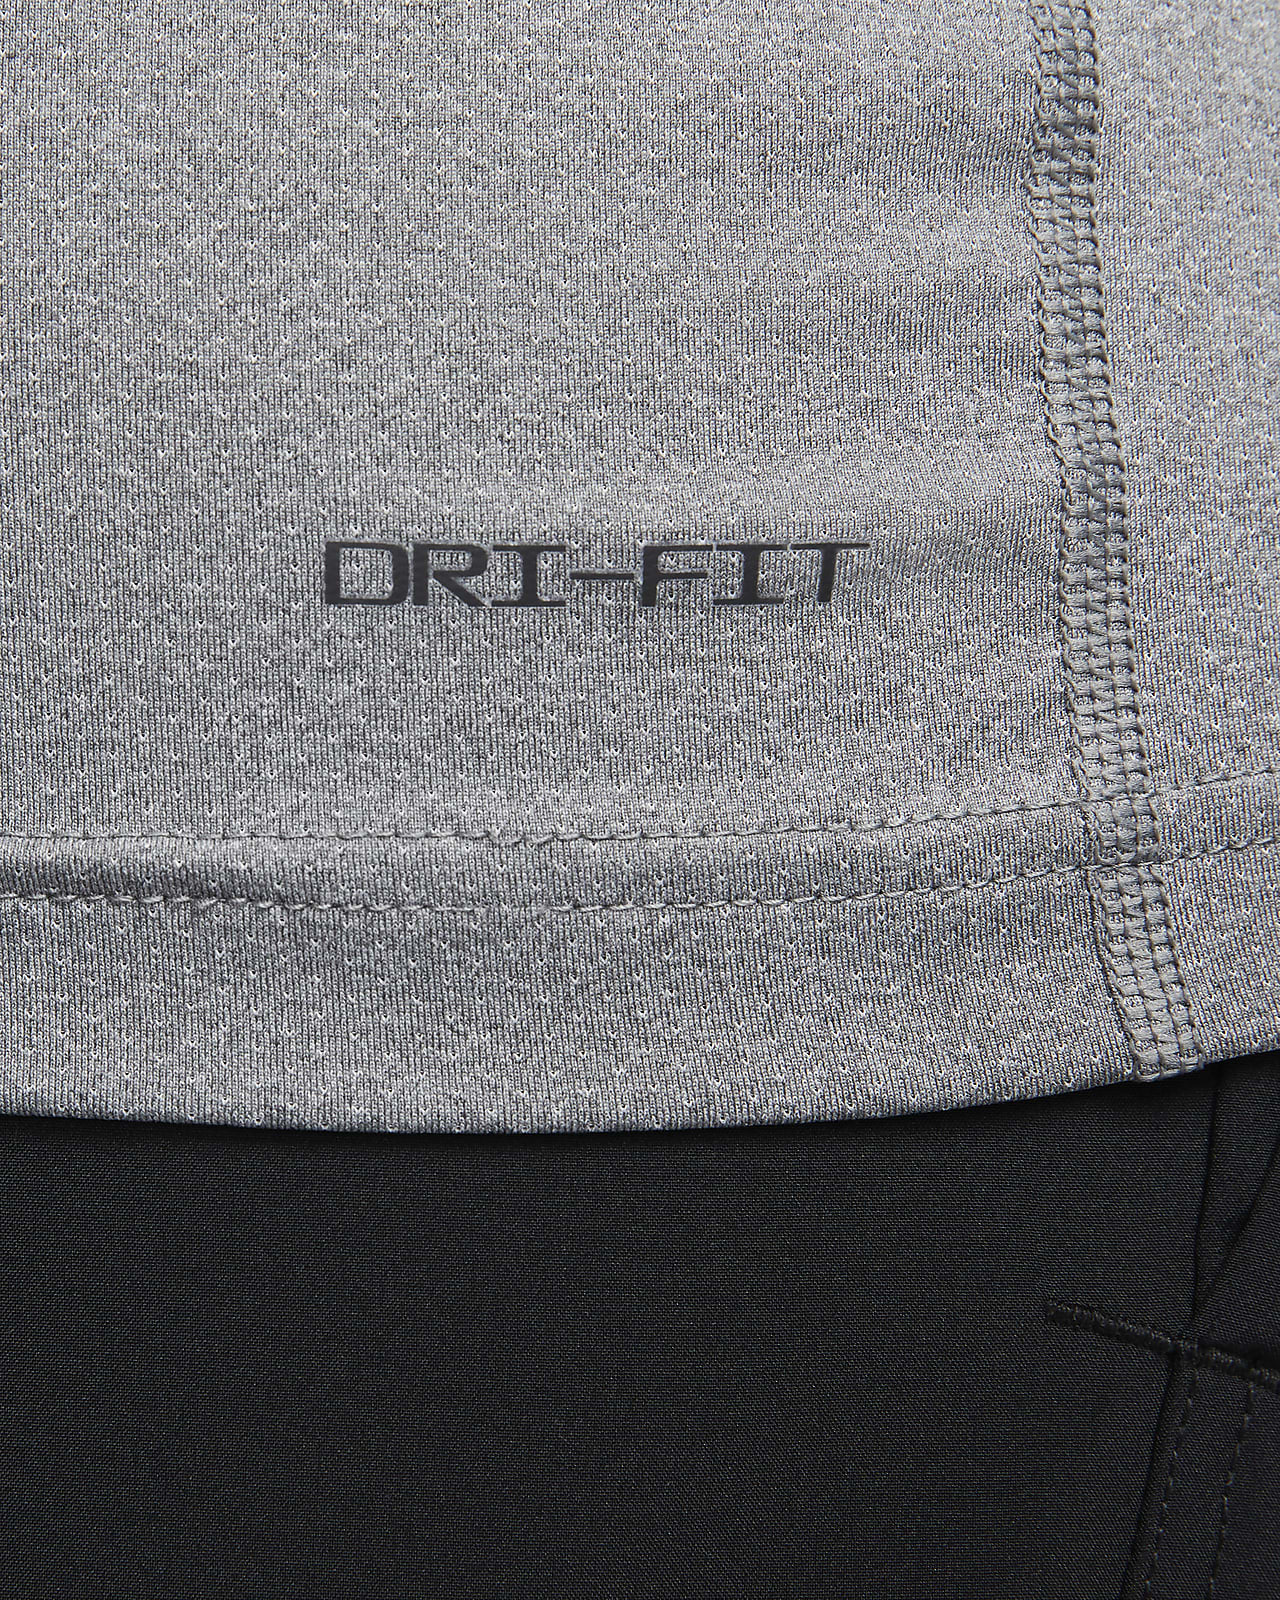 Haut de fitness sans manches en tissu Fleece Nike Dri-FIT pour homme